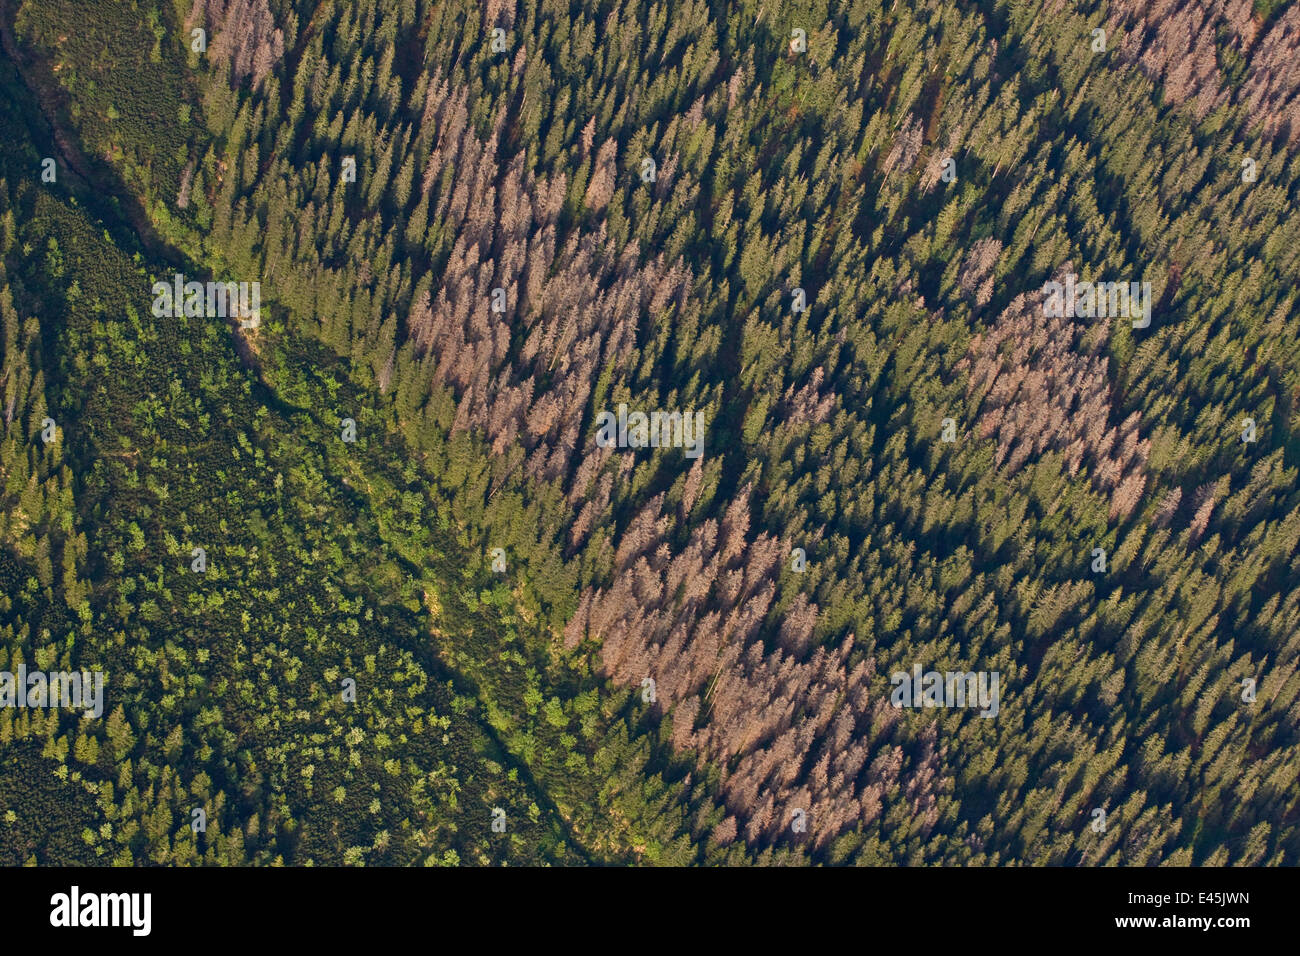 Vue aérienne de la frontière entre la forêt de sapins et montagne naine pin (Pinus mugo) zones montrant plusieurs arbres tués par les scolytes (Scolytidae) Tatras occidentales, Carpates, Slovaquie, Juin 2009 Banque D'Images